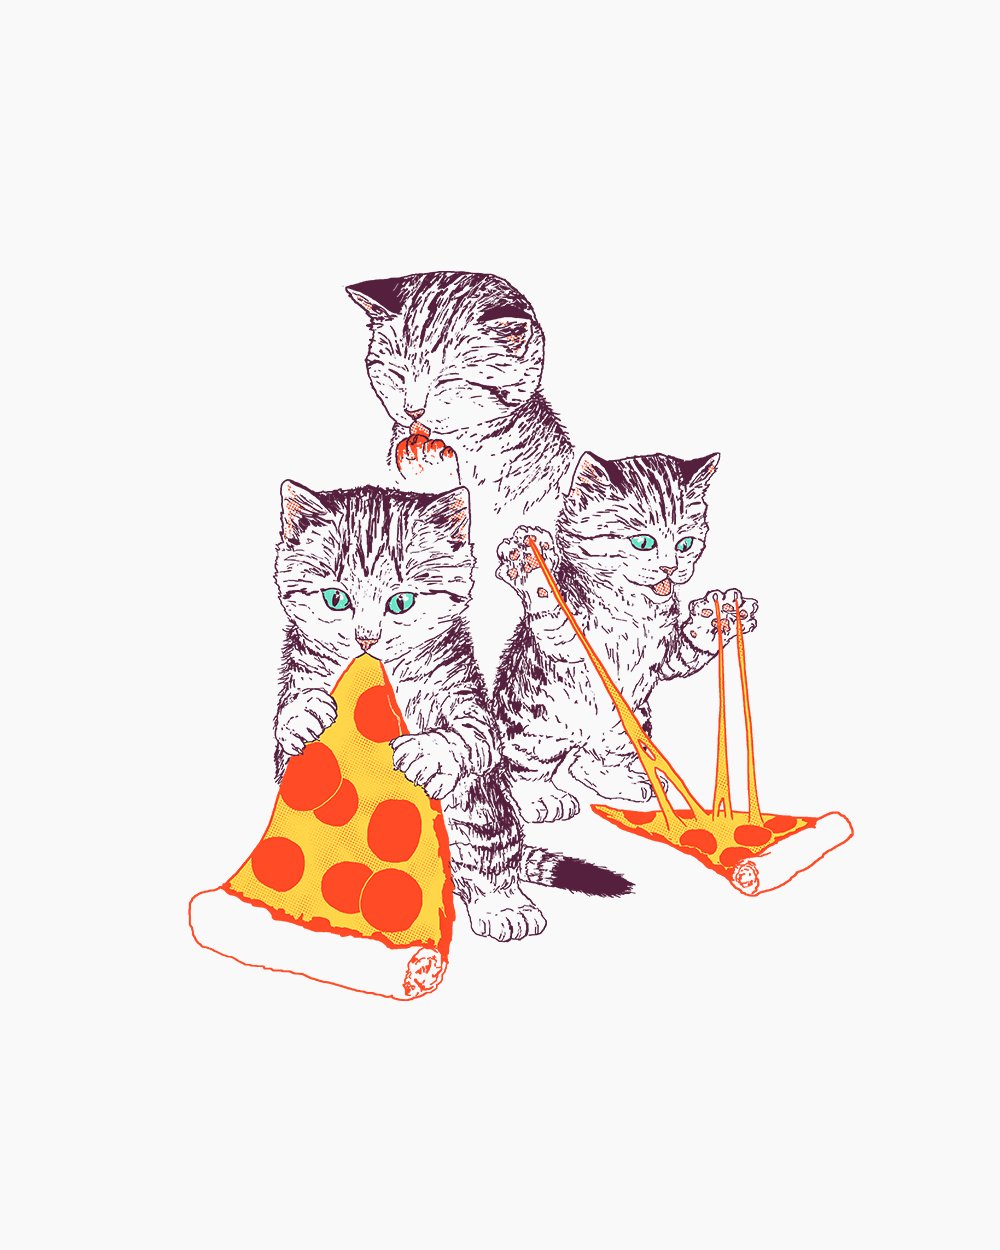 Pizza Kittens T-Shirt Australia Online #colour_white